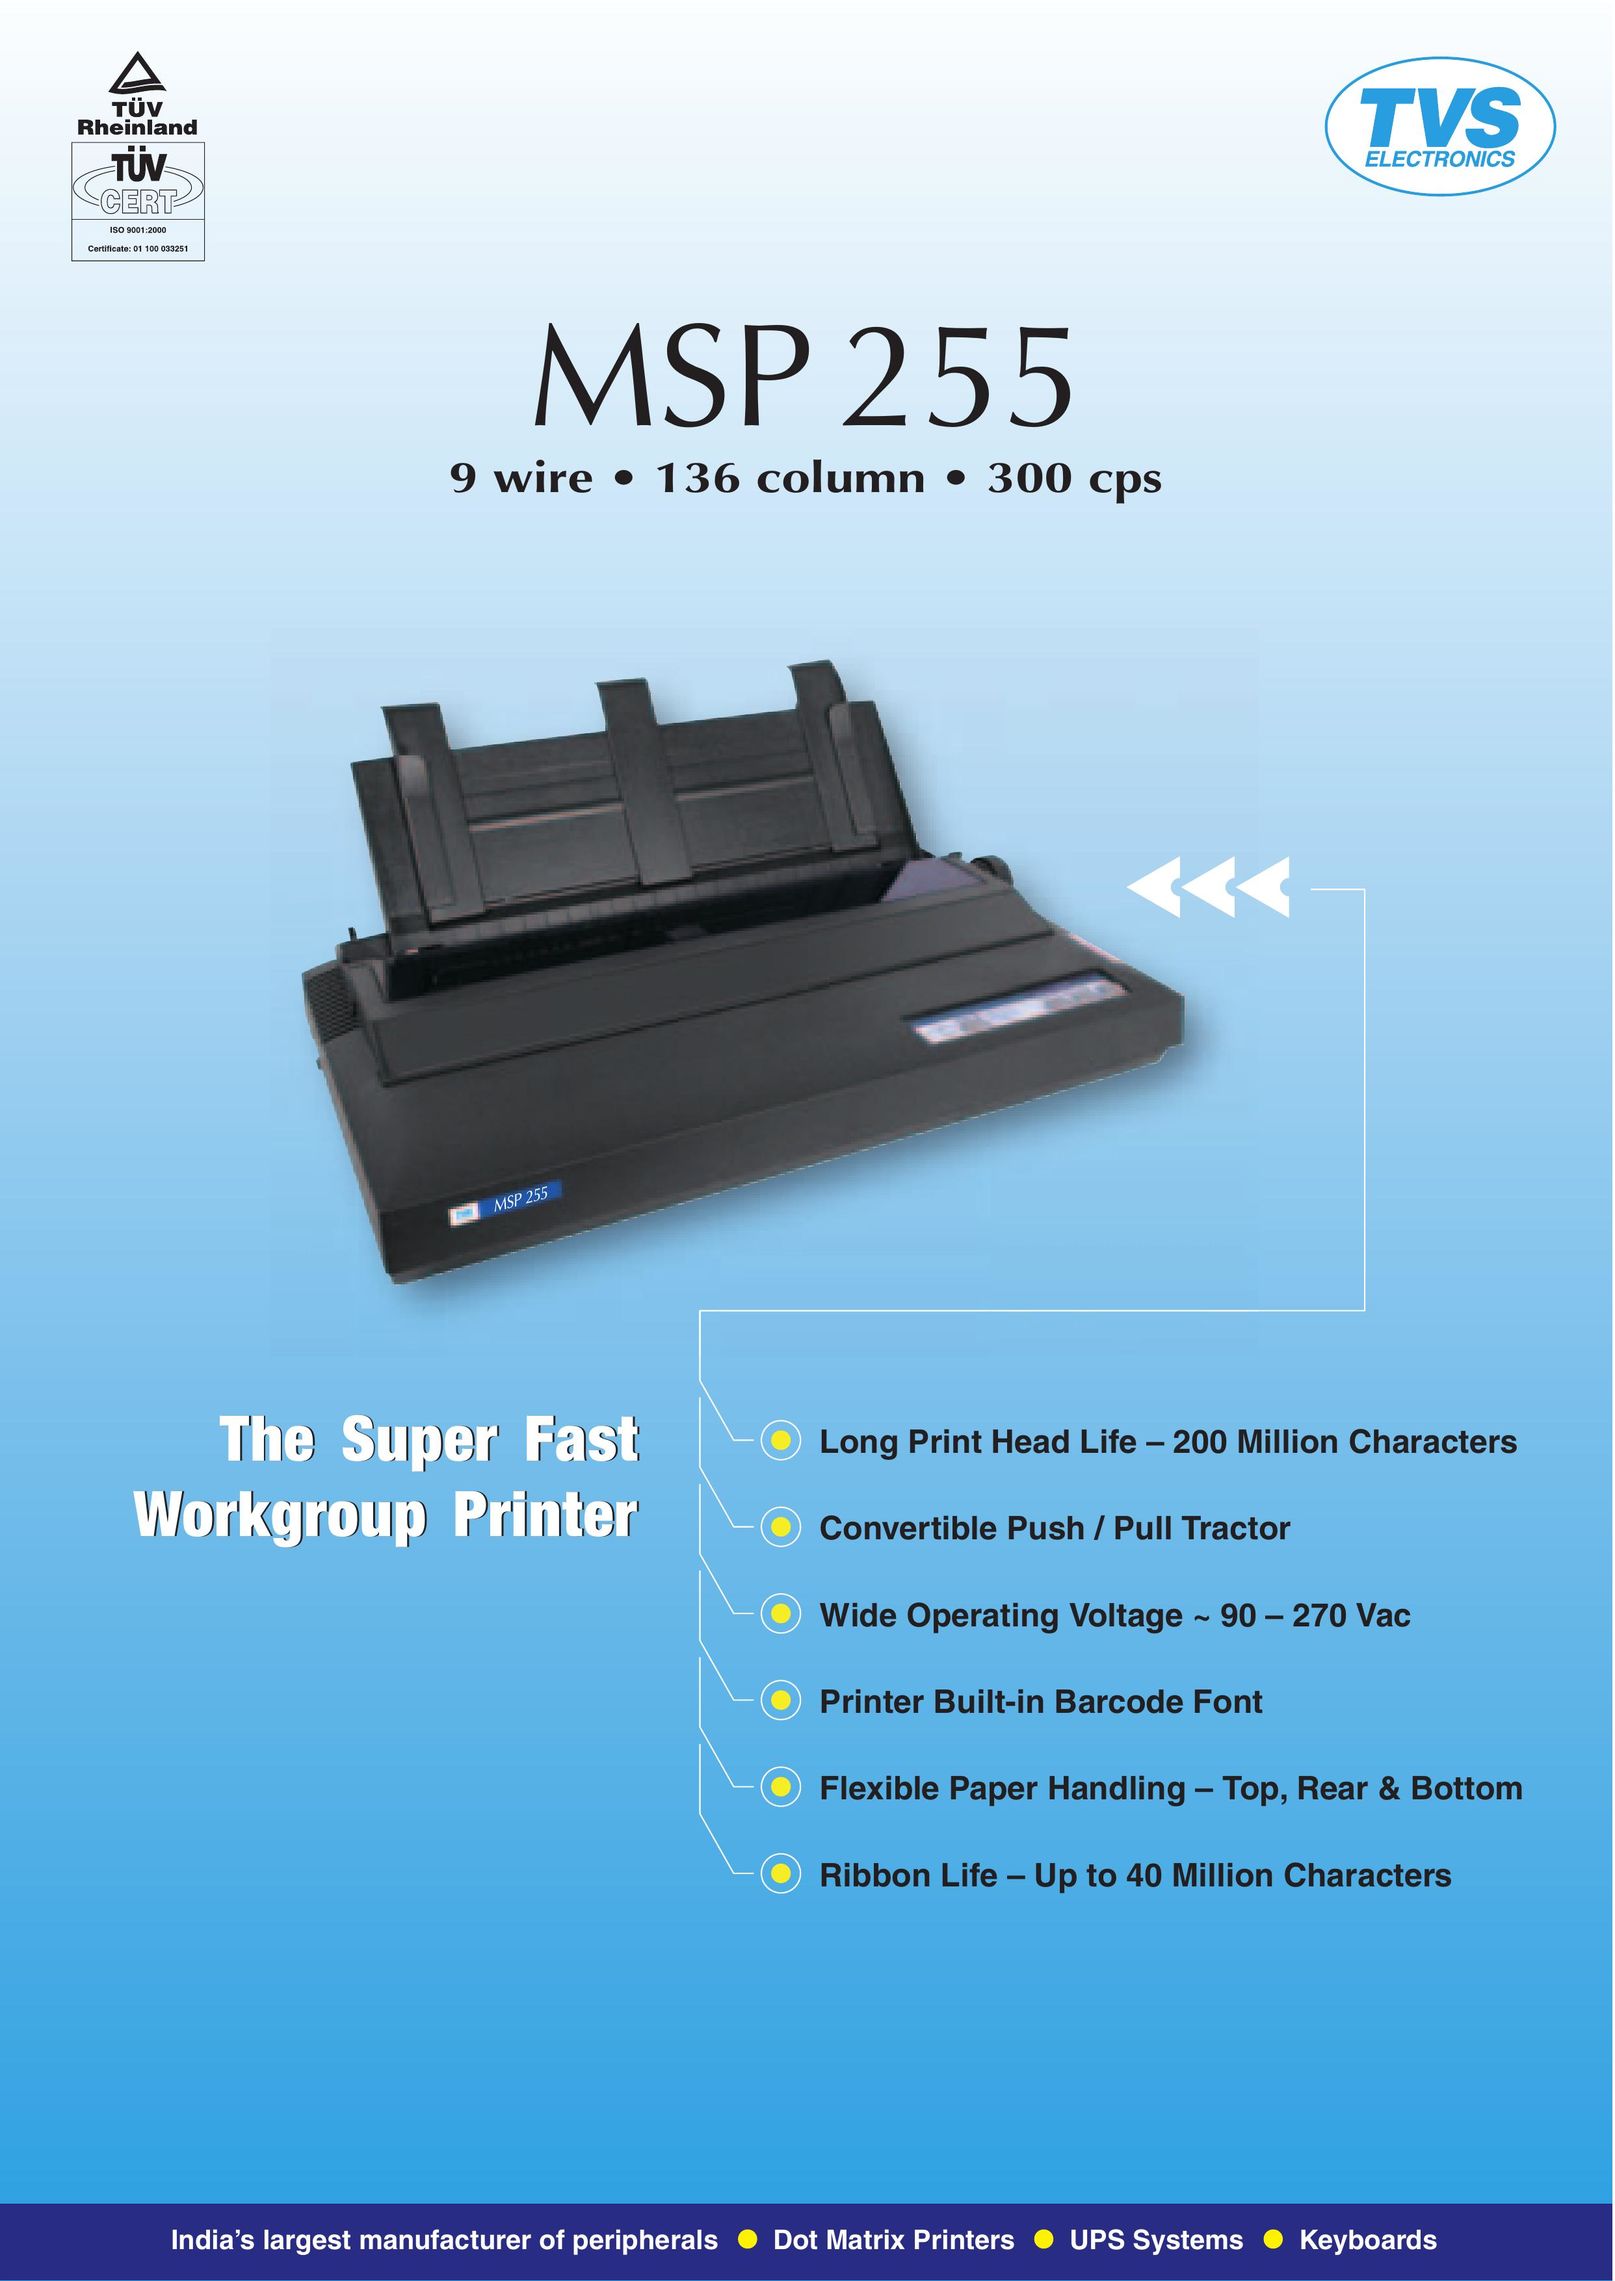 TVS electronic MSP 255 Printer User Manual